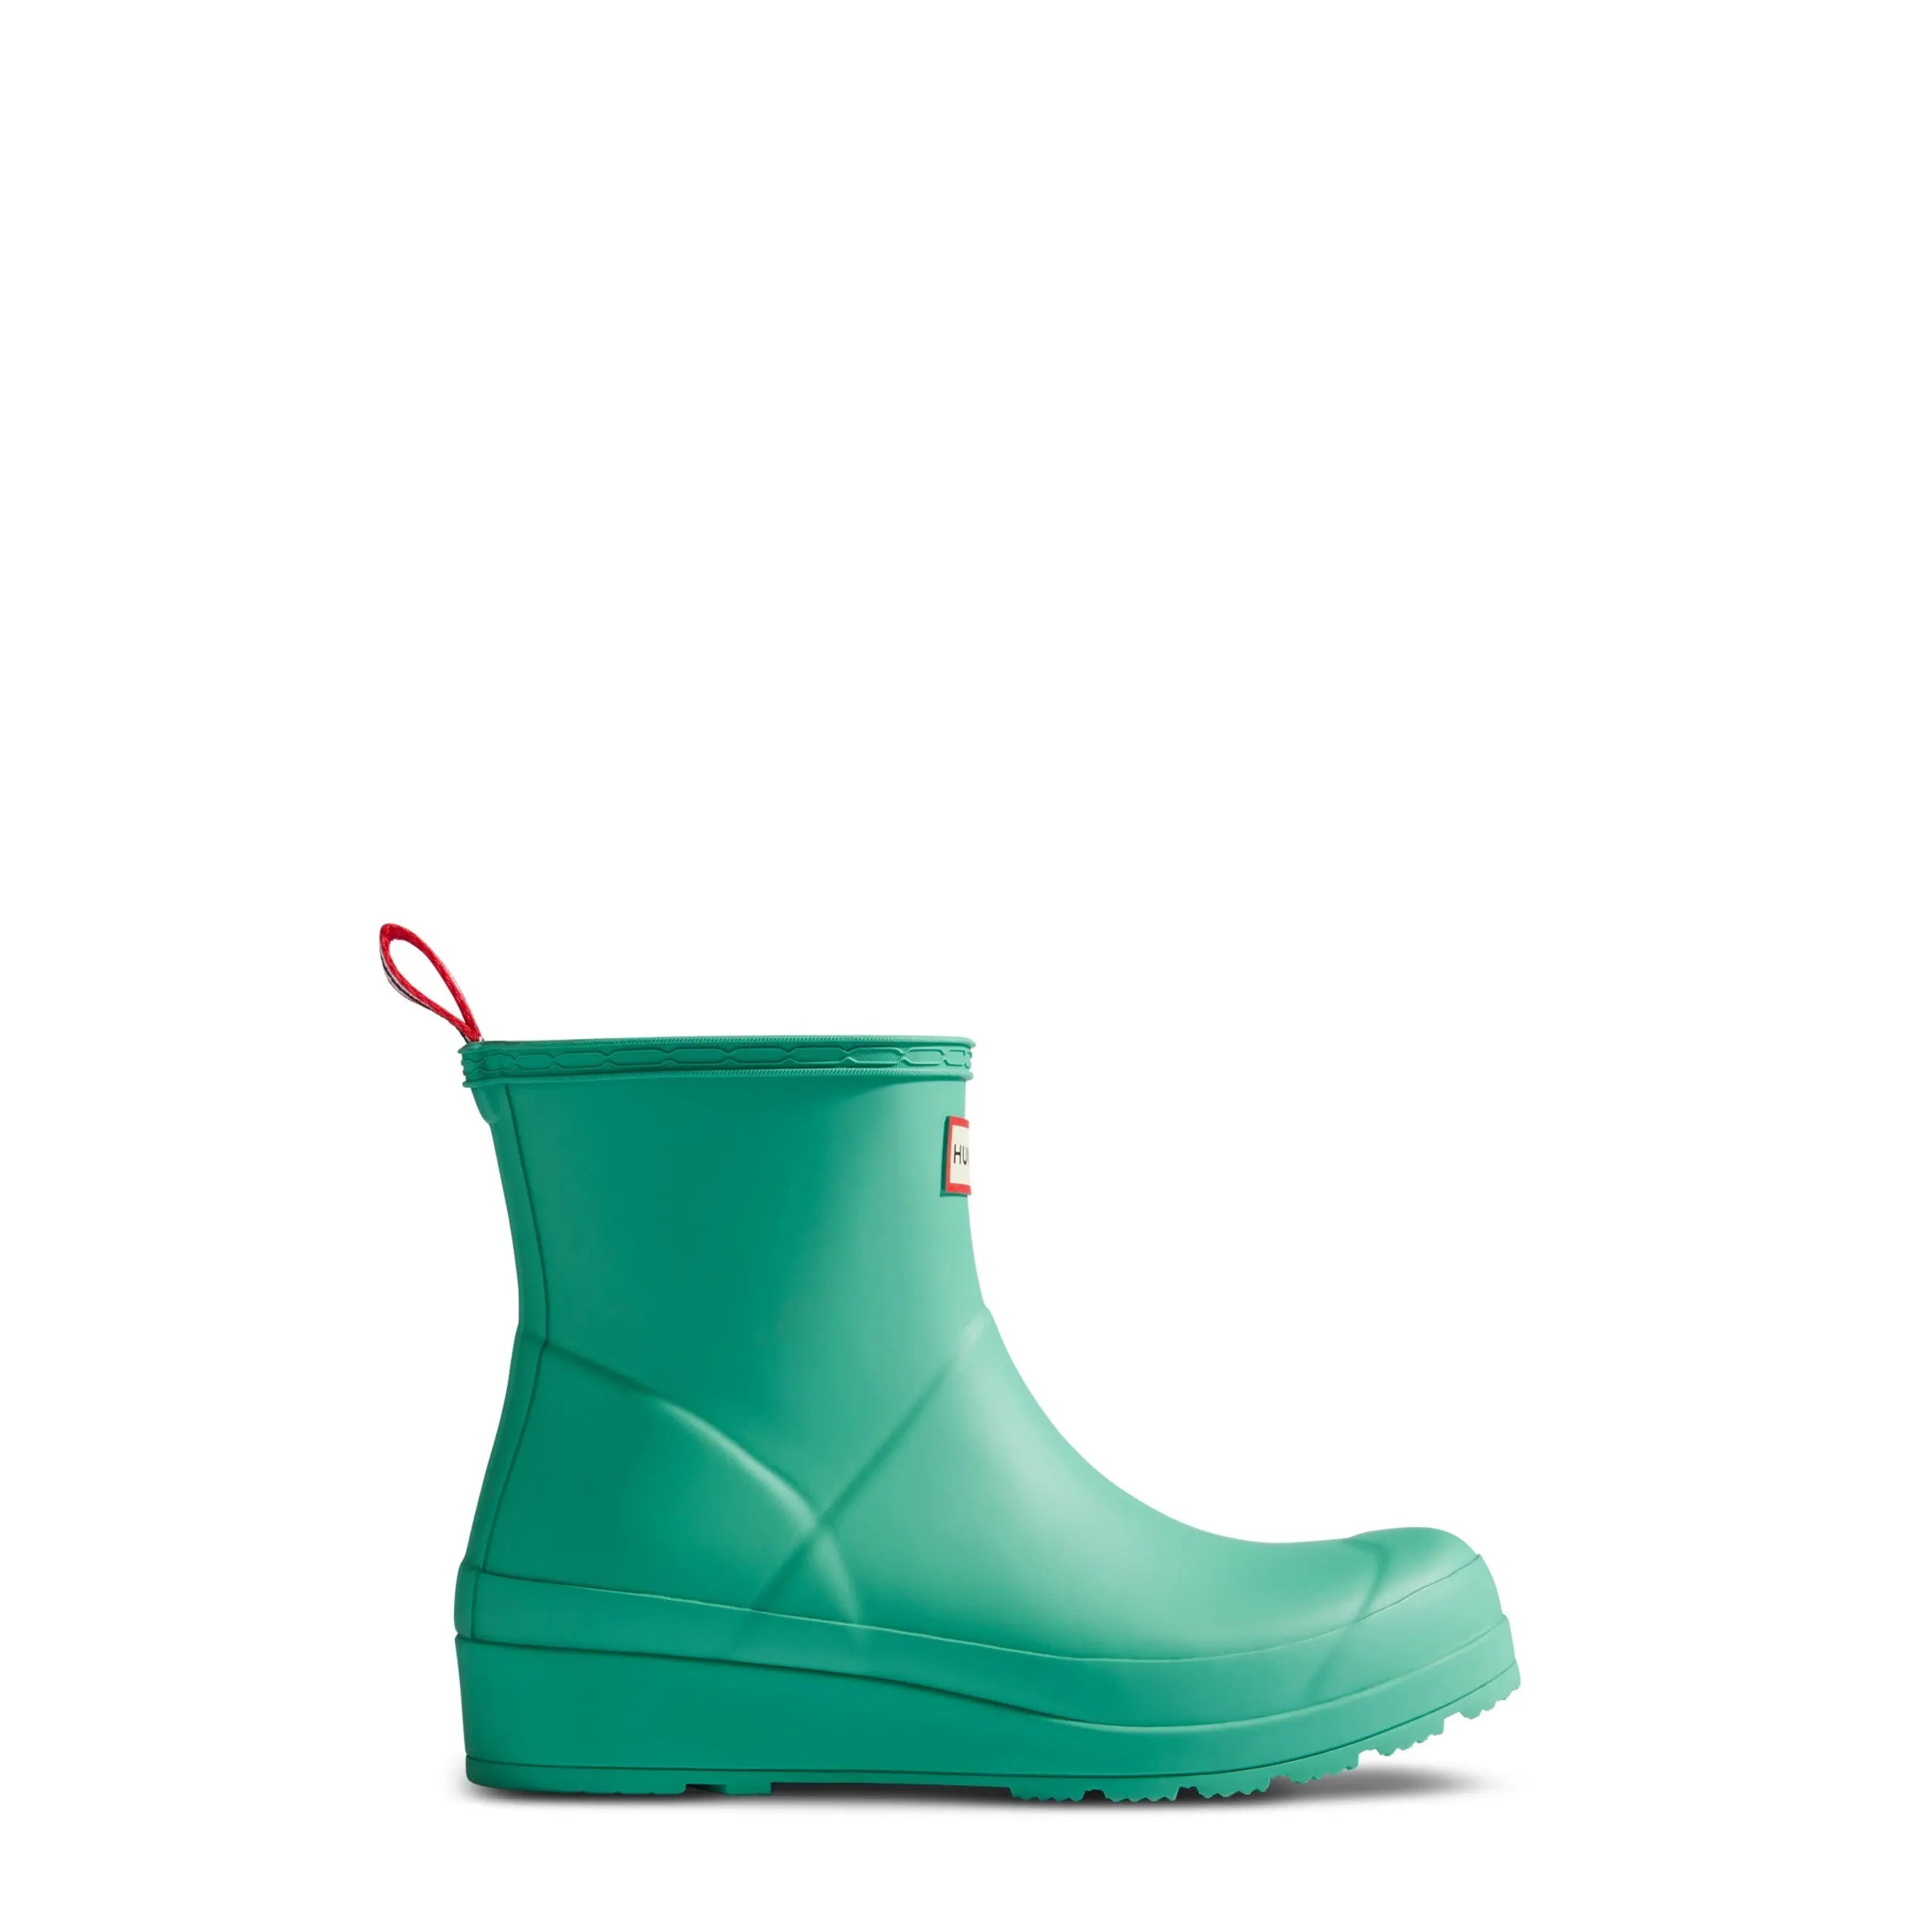 Women's PLAY™ Short Rain Boots - Hunter Boots Women's PLAY™ Short Rain Boots Thrum Green Hunter Boots Women's > Rain Boots > Play Boots